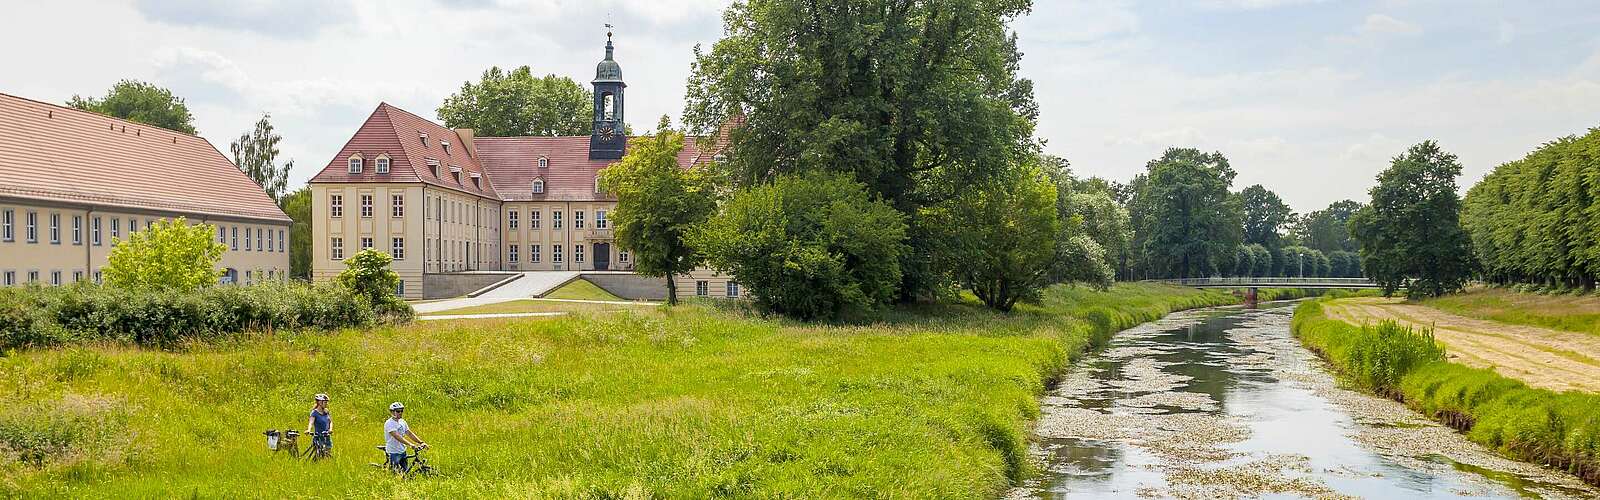 Schloss Elsterwerda mit Grünanlage,
        
    

        
        
            Picture: Andreas Franke